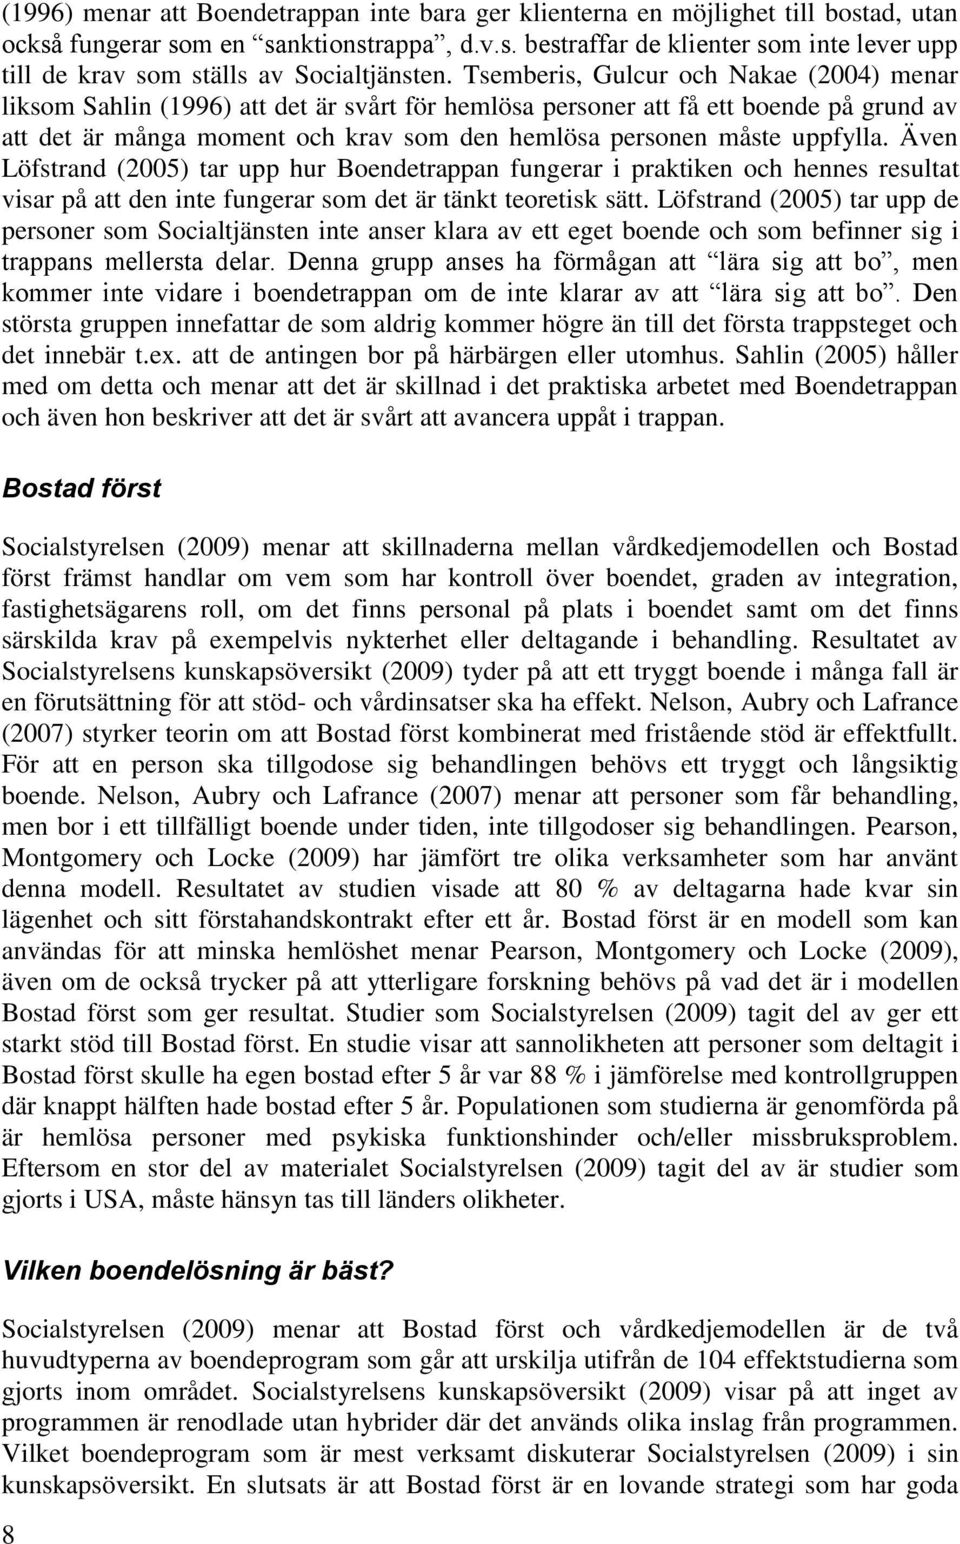 Även Löfstrand (2005) tar upp hur Bendetrappan fungerar i praktiken ch hennes resultat visar på att den inte fungerar sm det är tänkt teretisk sätt.